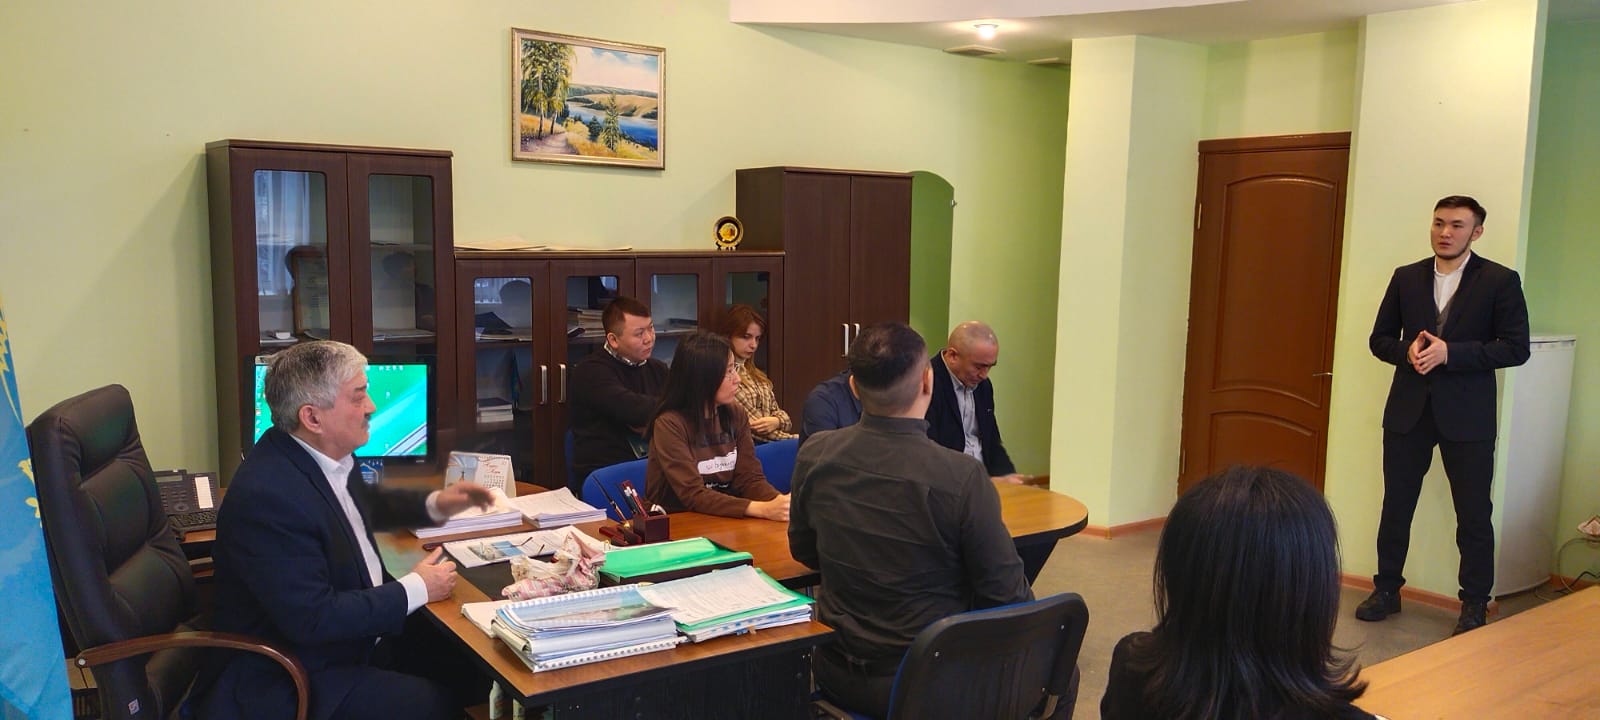 В филиале РГП "Казводхоз" СКО прошла встреча с теологом